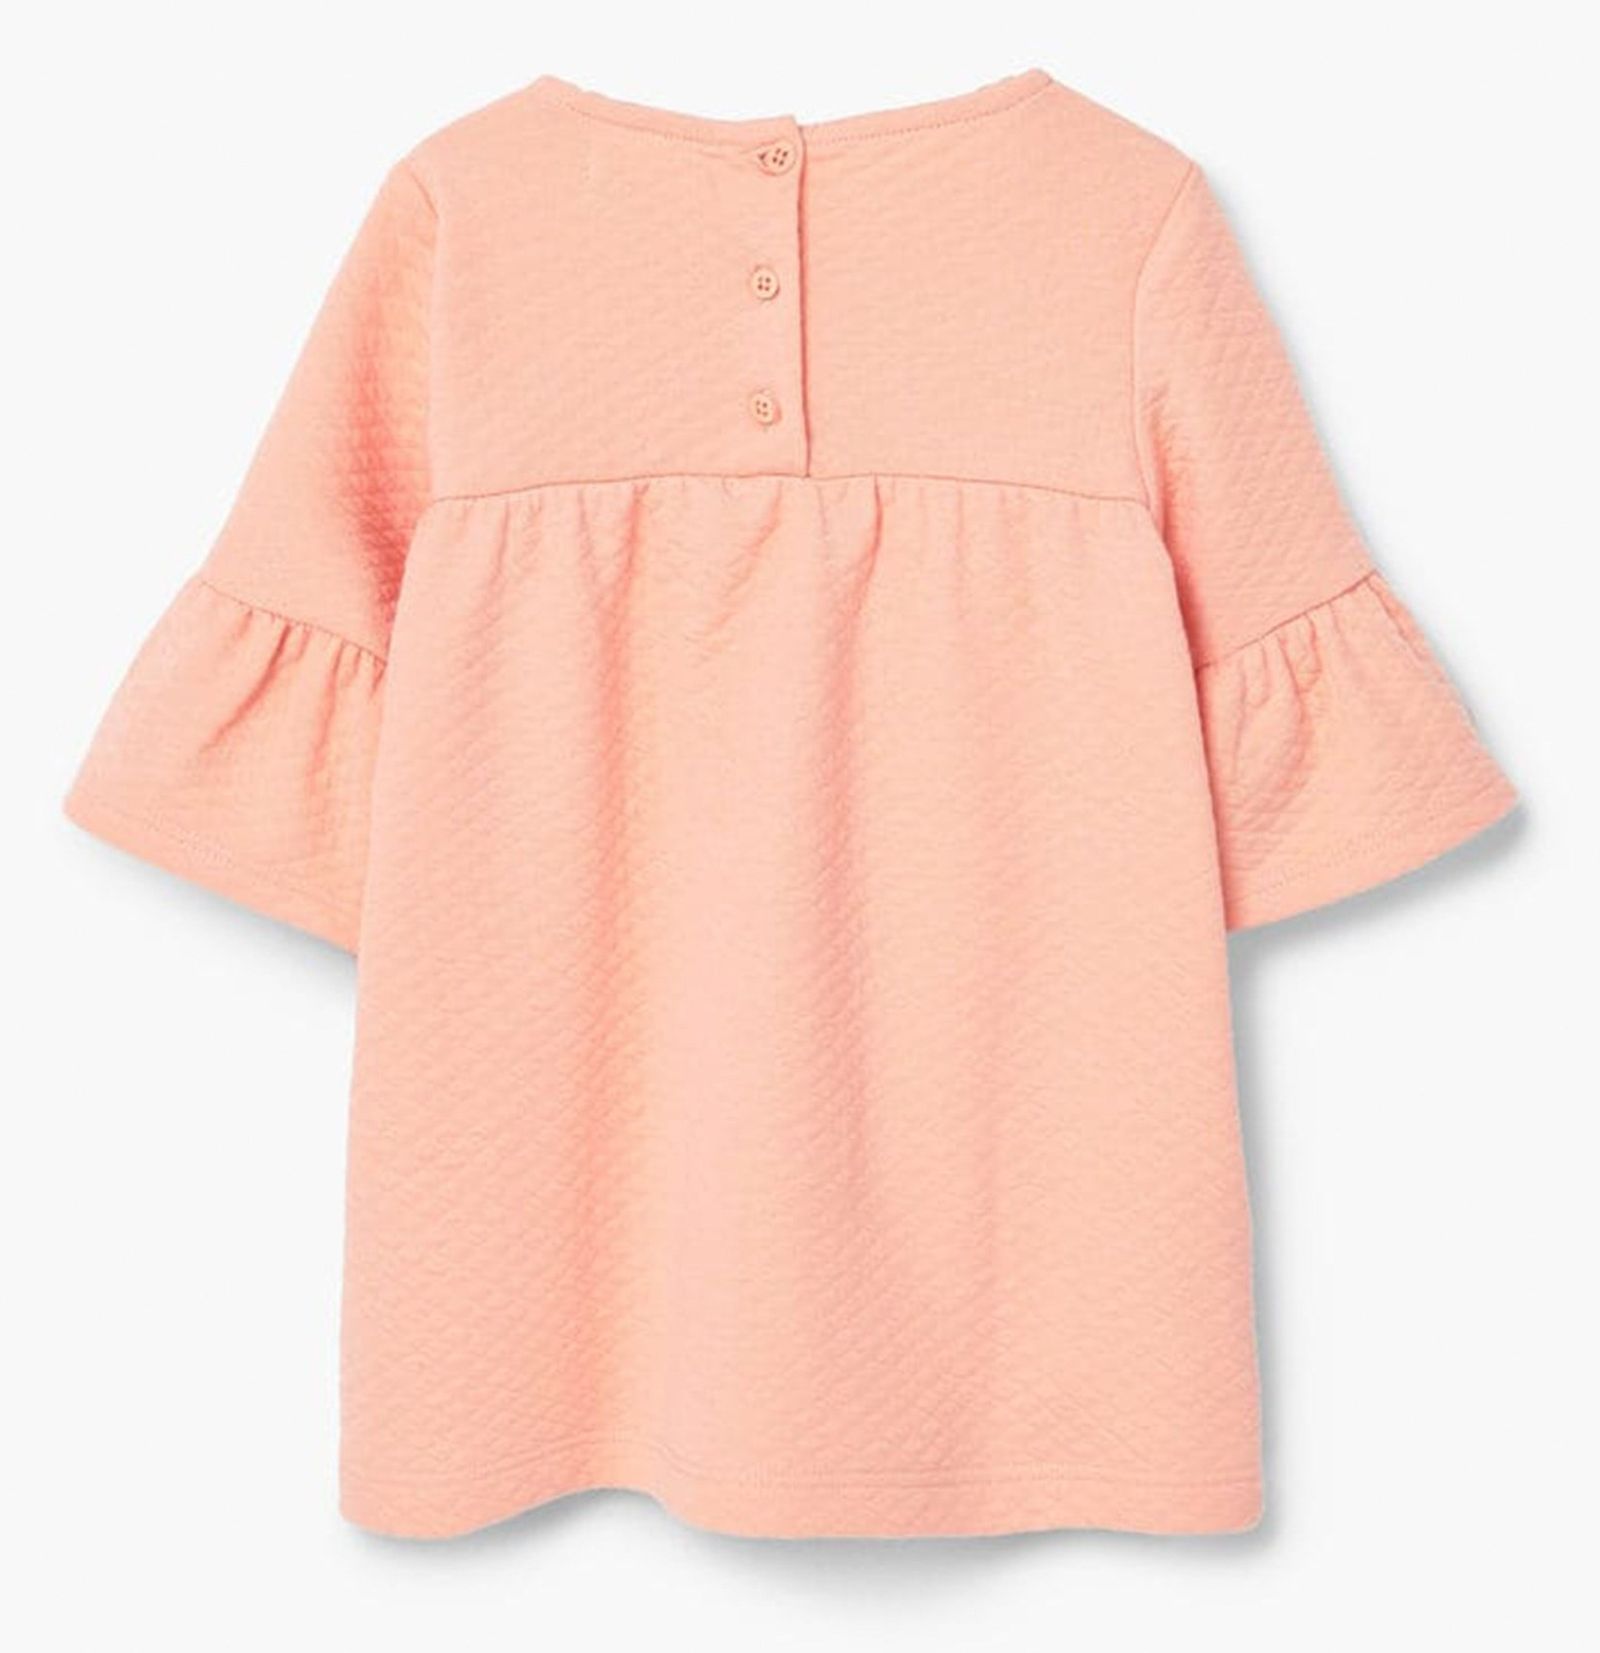 پیراهن ساده نوزادی دخترانه - مانگو - نارنجي  - 3